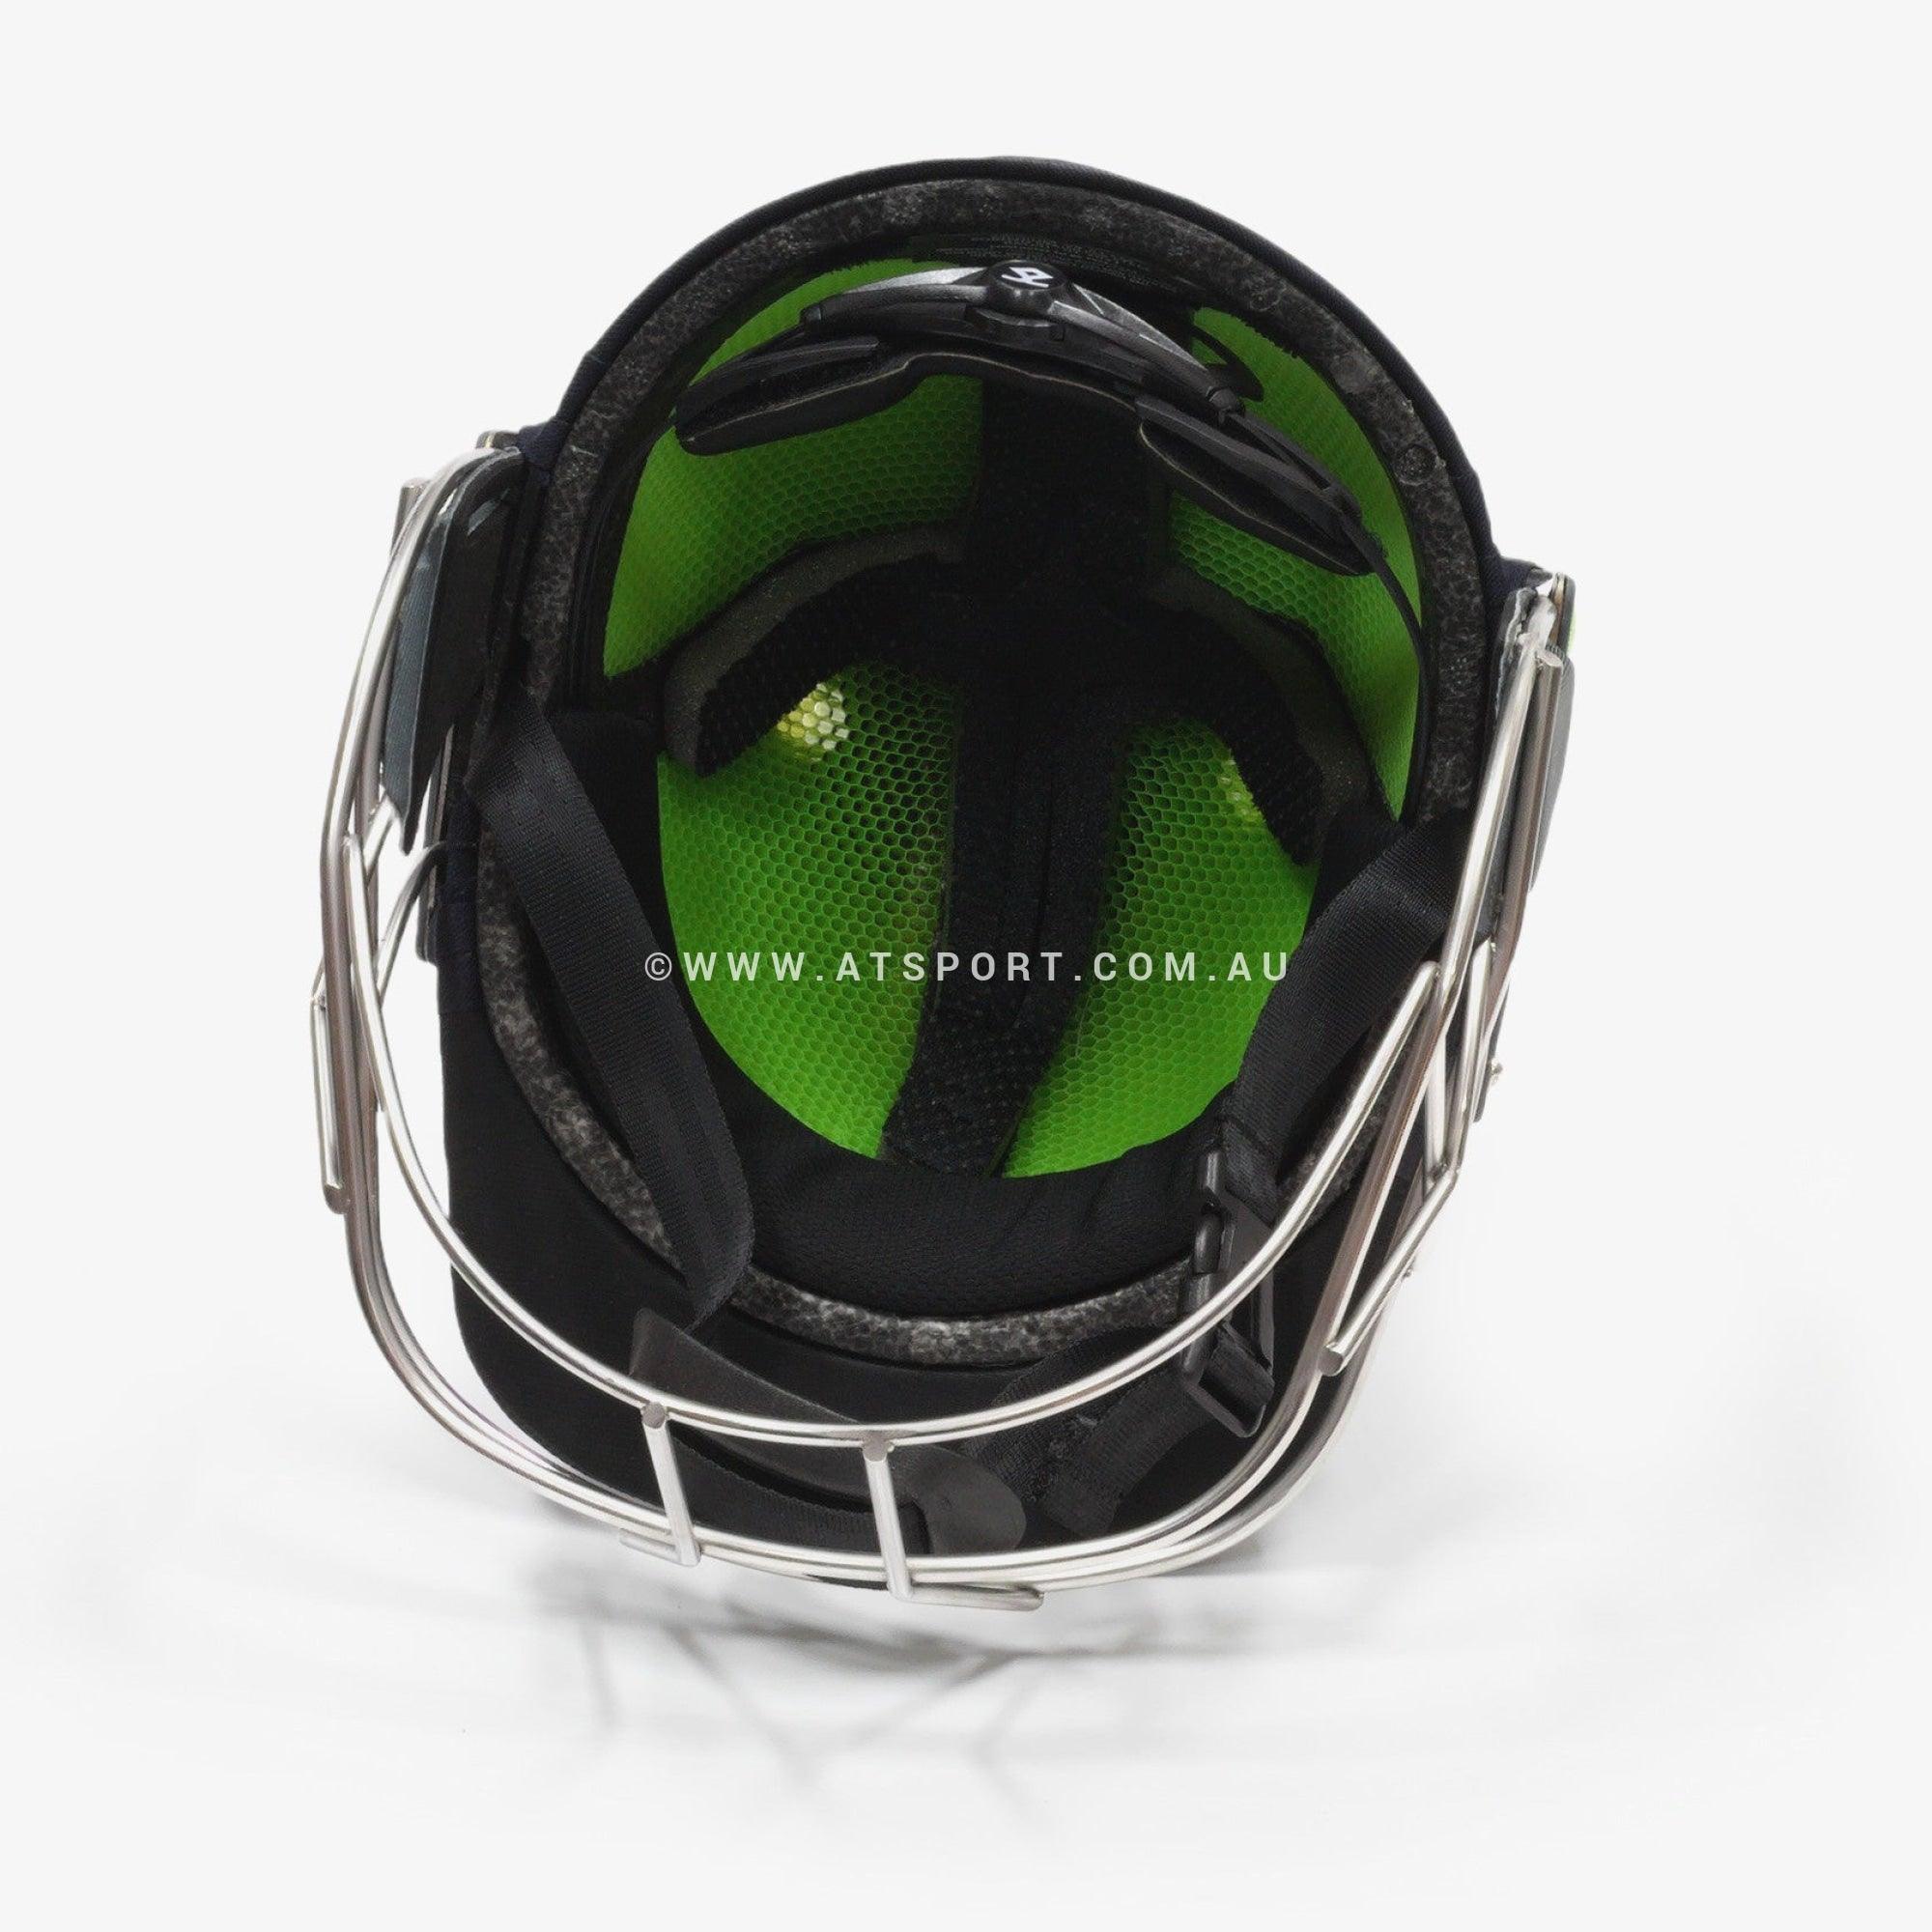 Shrey Koroyd TITANIUM Grille Cricket Helmet - AT Sports